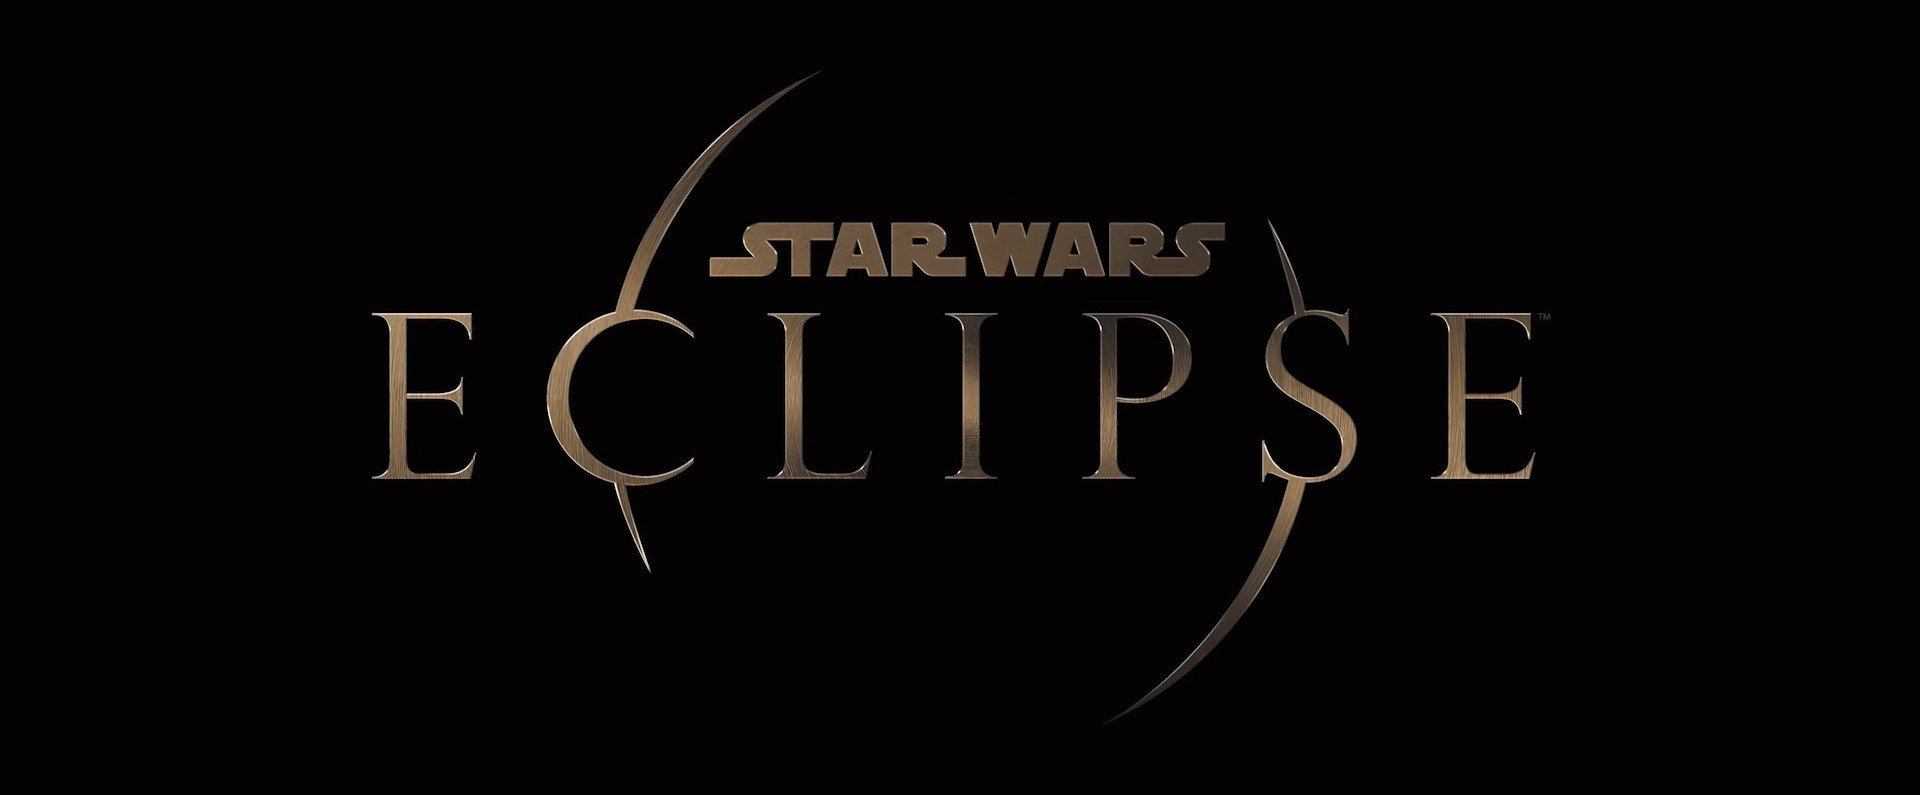 ลือ Star Wars Eclipse การพัฒนาเป็นไปได้ด้วยดี อาจได้เล่นกันภายในปี ค.ศ. 2025